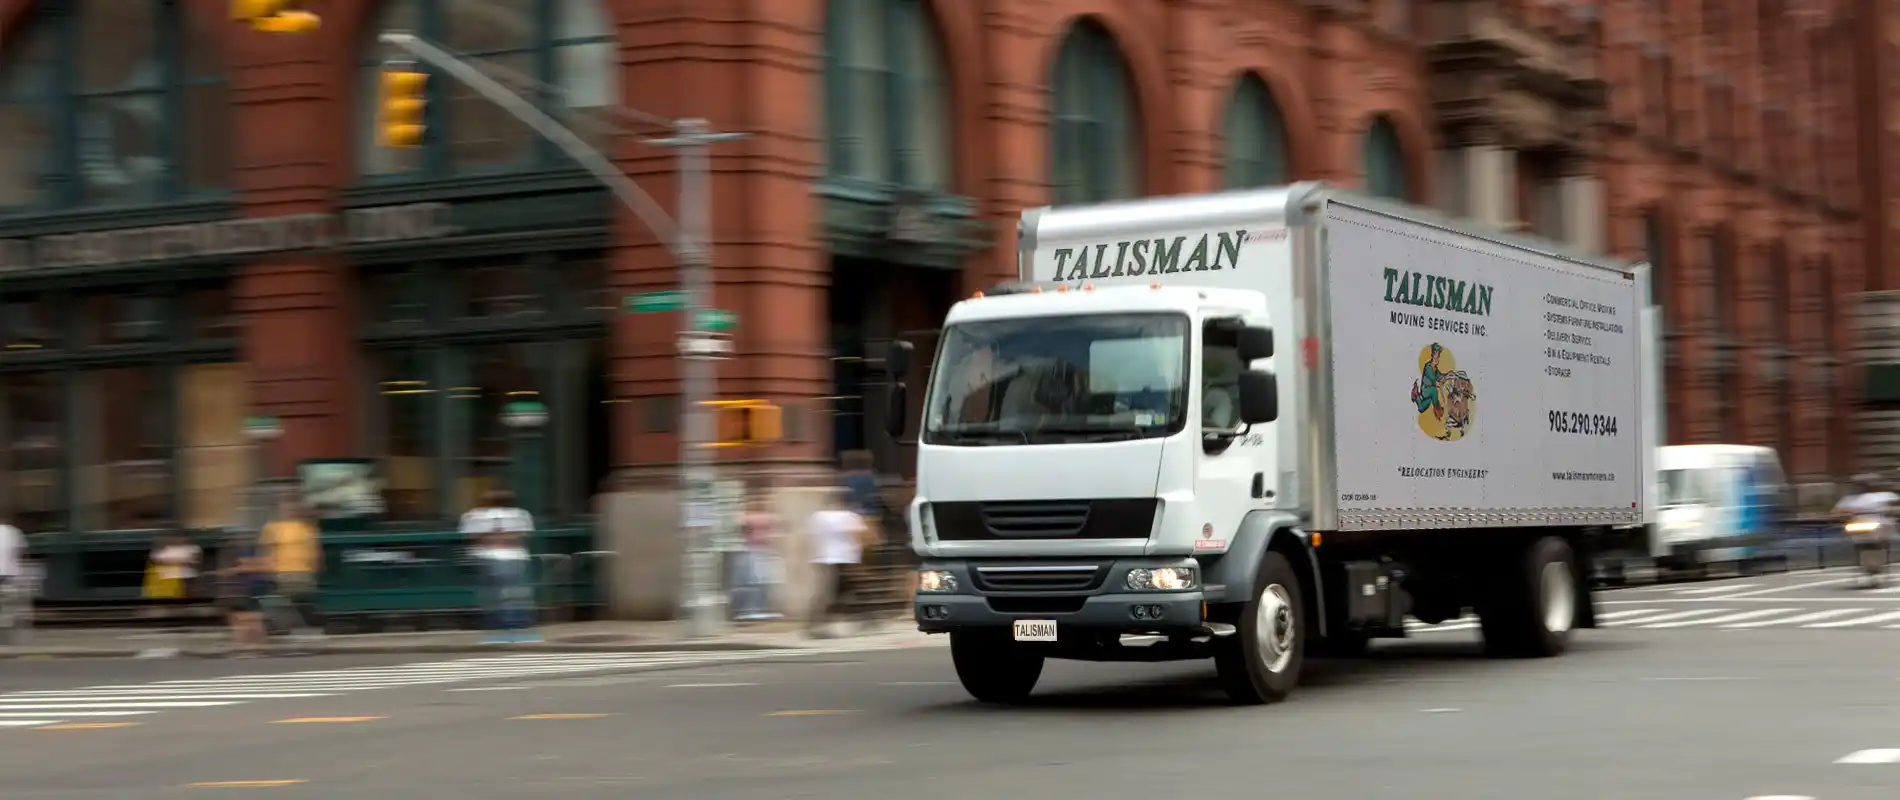 Talisman Movers Truck